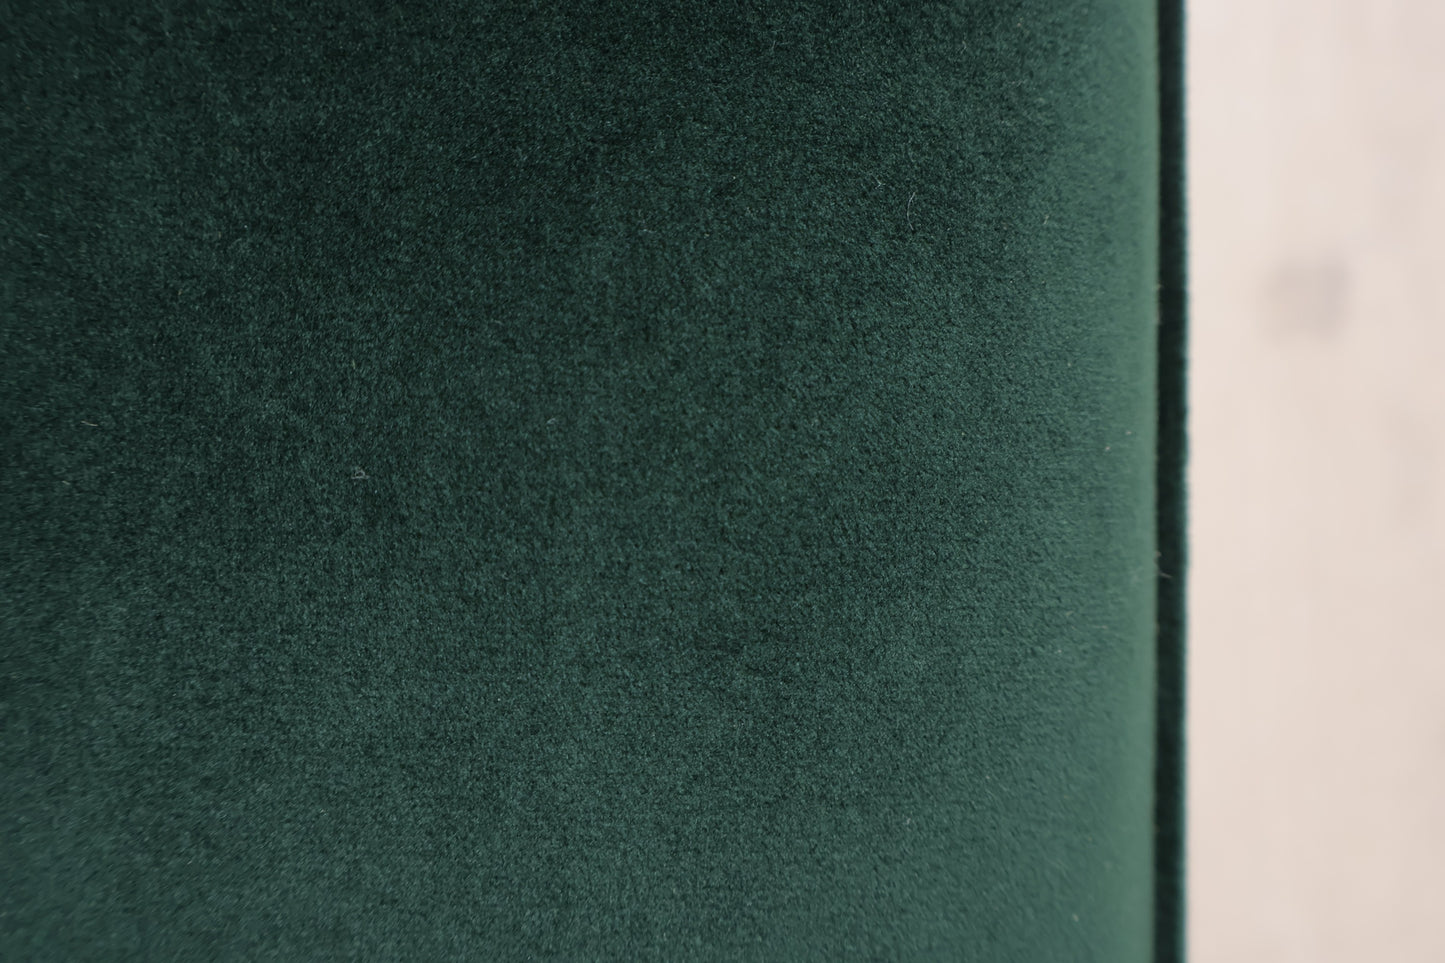 Nyrenset | Mørk grønn Harper sjeselongsofa i velur fra Sofacompany